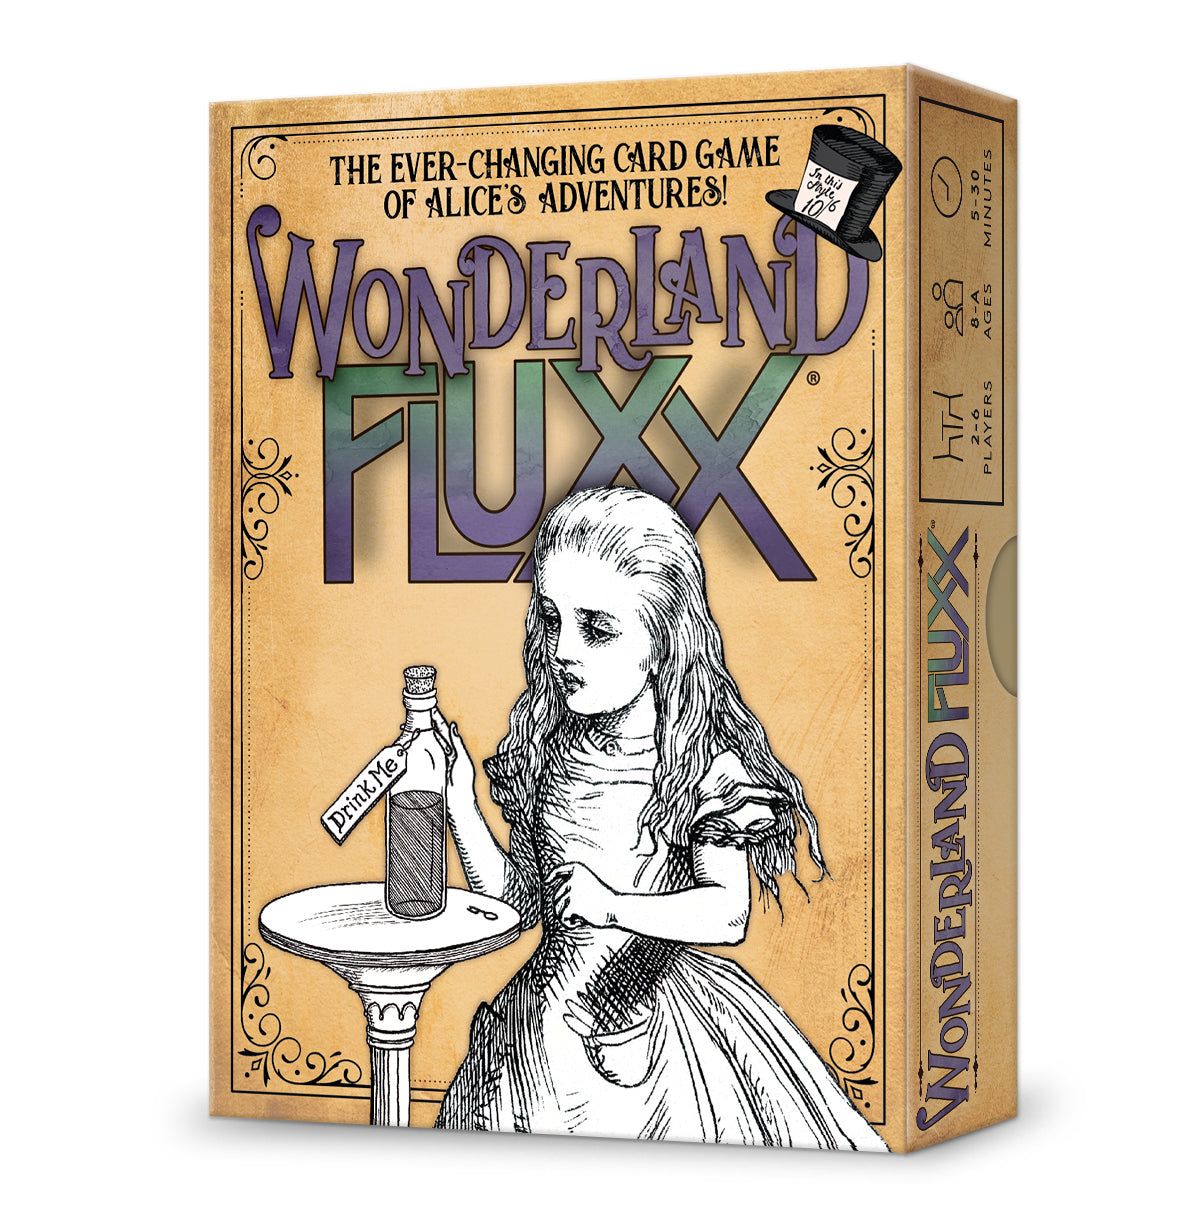 Fluxx - Wonderland